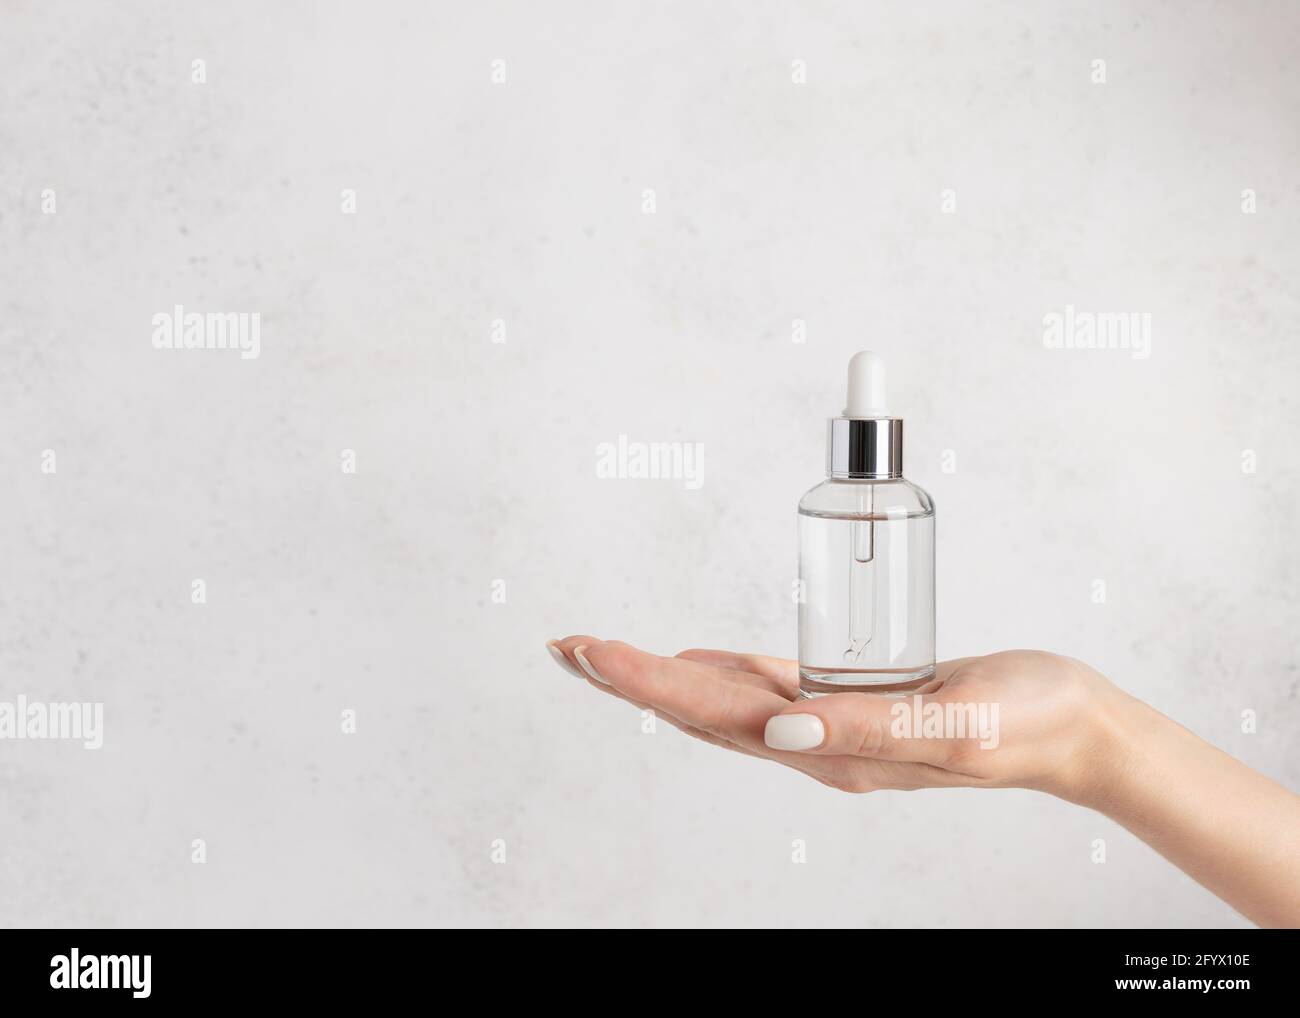 main de femme tenant un flacon en verre avec du sérum hydratant. Beauté cosmétique concept de soin de la peau. Fond blanc en béton. Image horizontale Banque D'Images